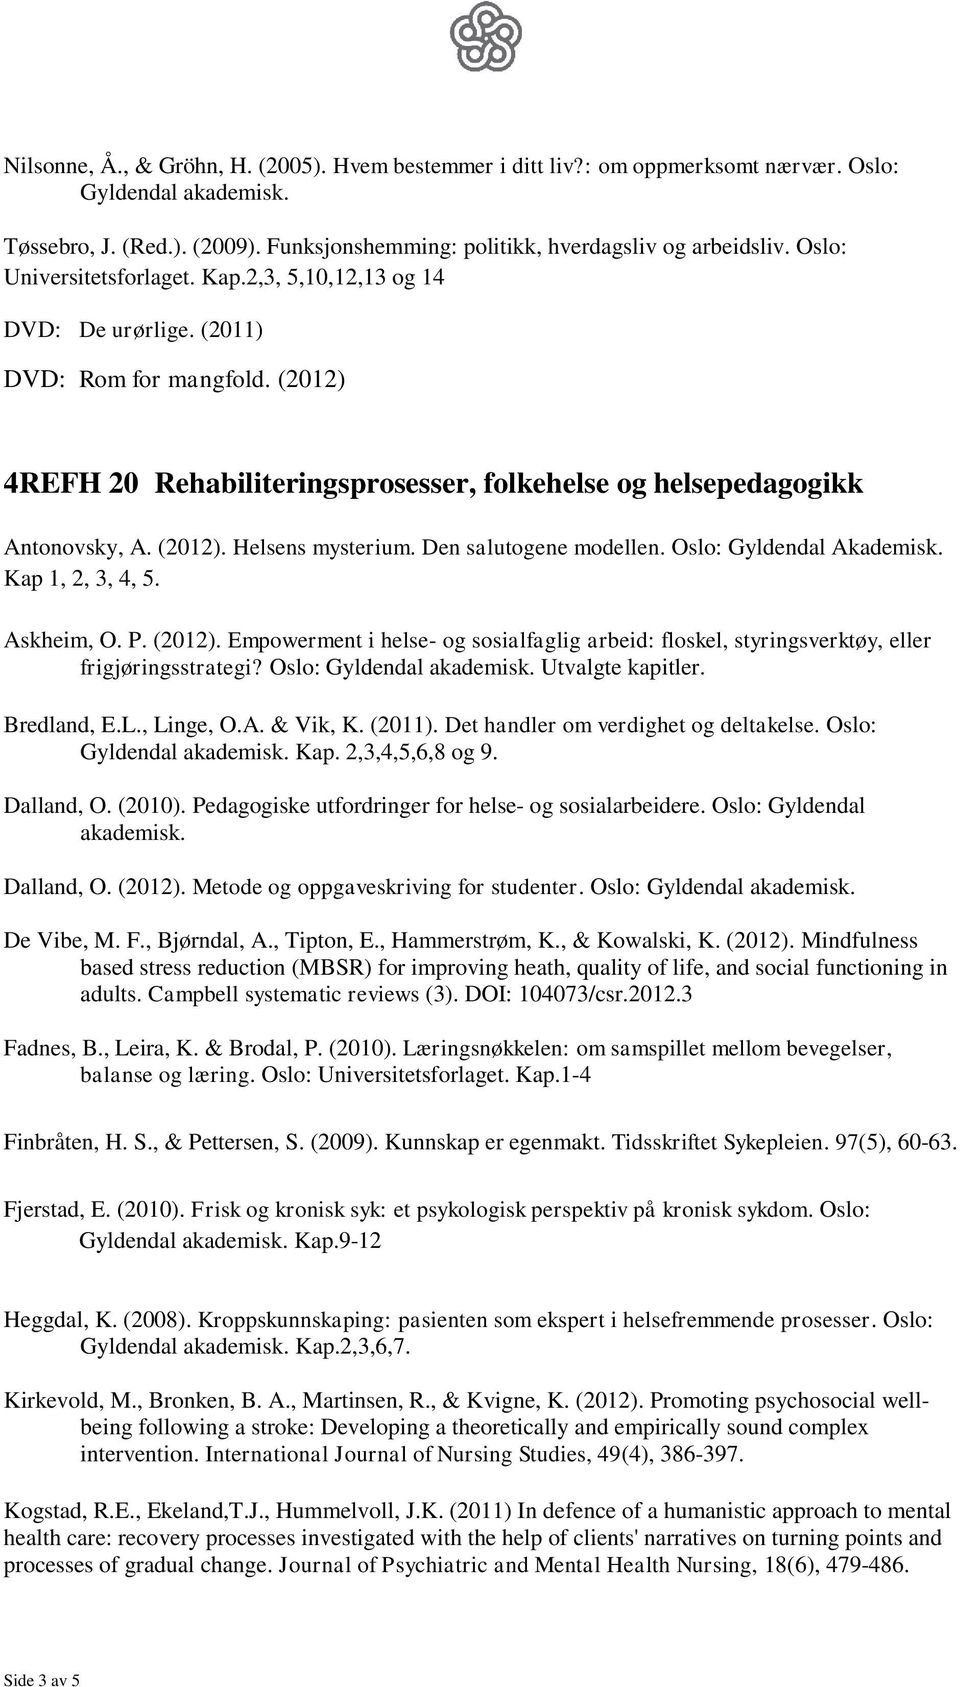 Den salutogene modellen. Oslo: Gyldendal Akademisk. Kap 1, 2, 3, 4, 5. Askheim, O. P. (2012). Empowerment i helse- og sosialfaglig arbeid: floskel, styringsverktøy, eller frigjøringsstrategi?